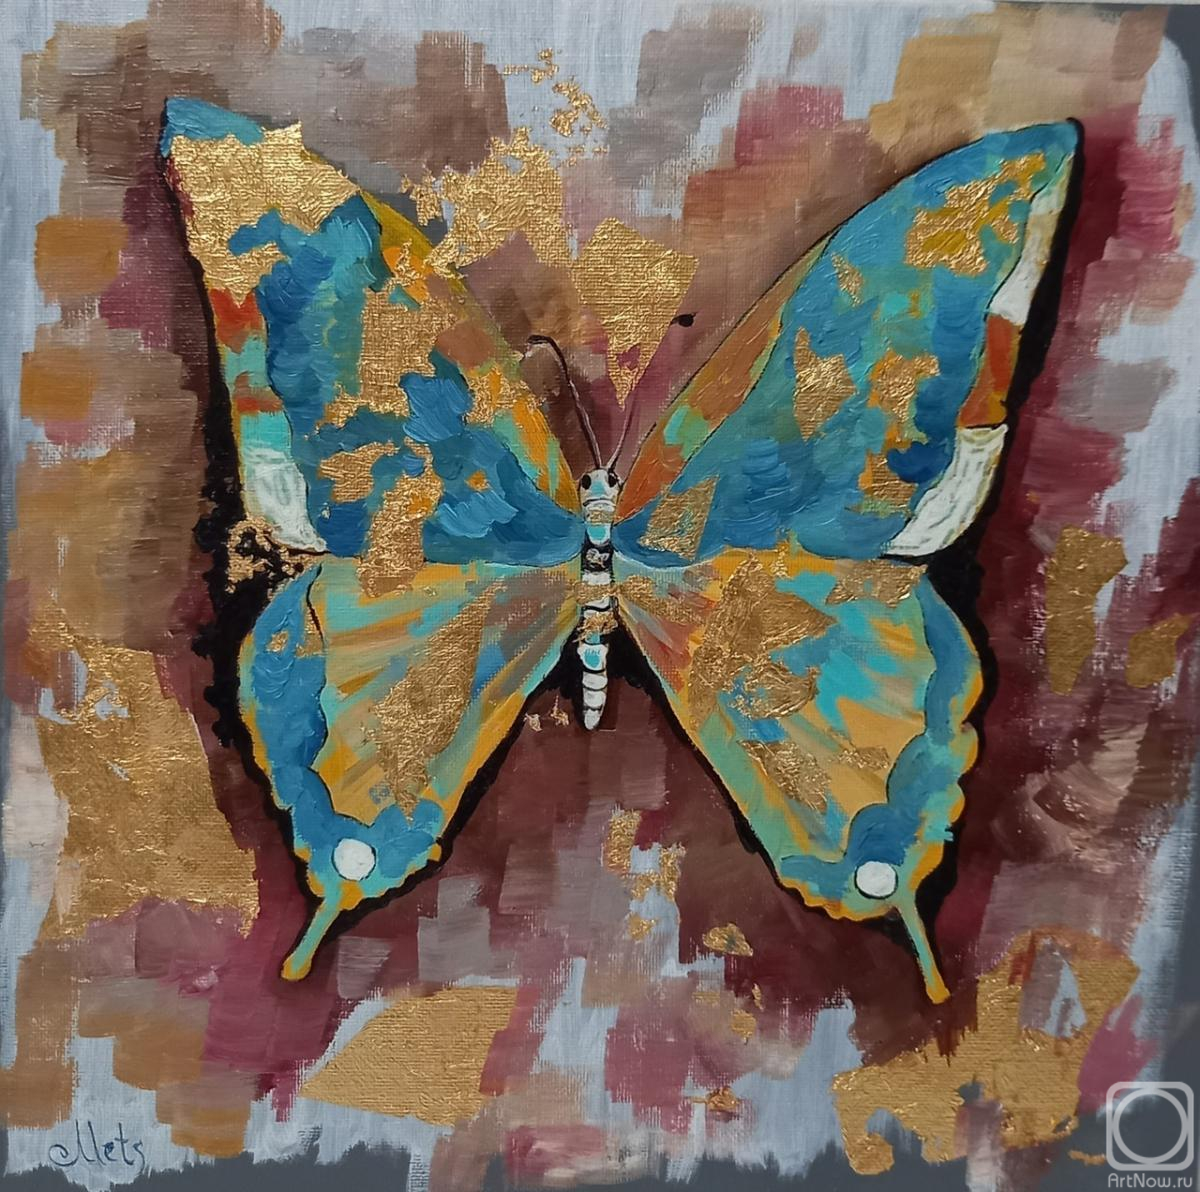 Mets Ekaterina. Butterfly